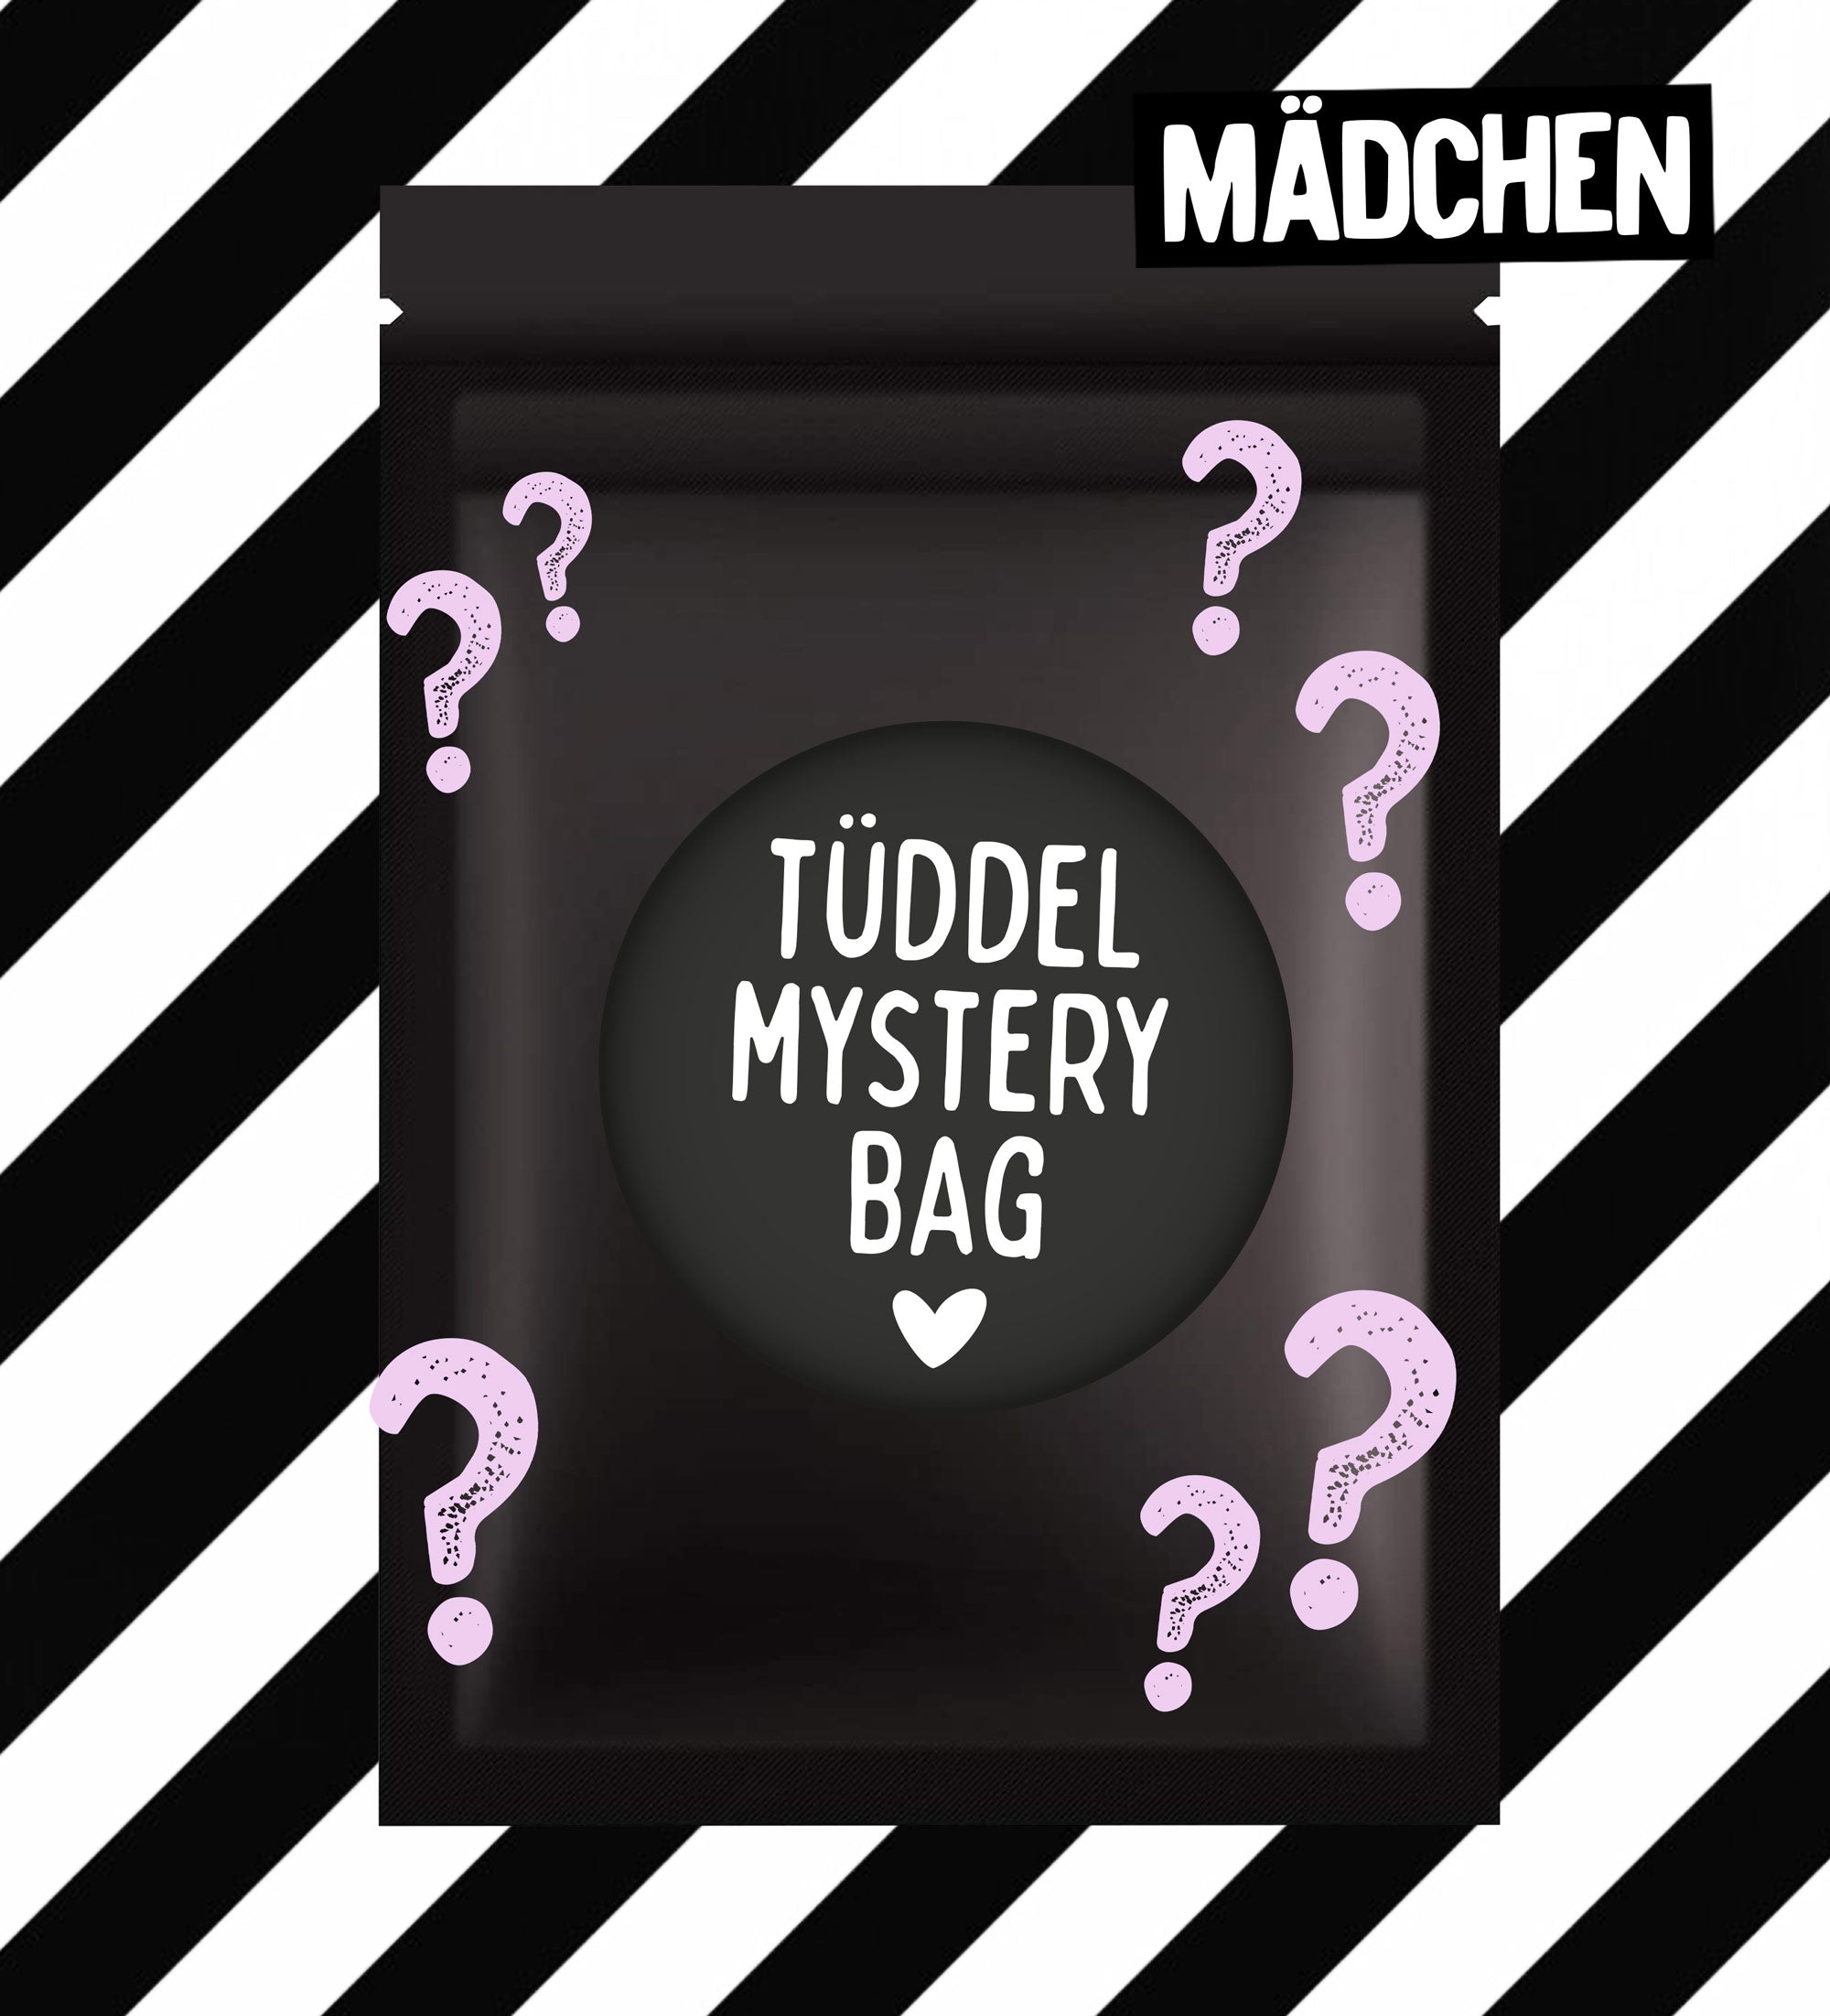 Tüddel Mystery Bag - Mädchen *MAI*